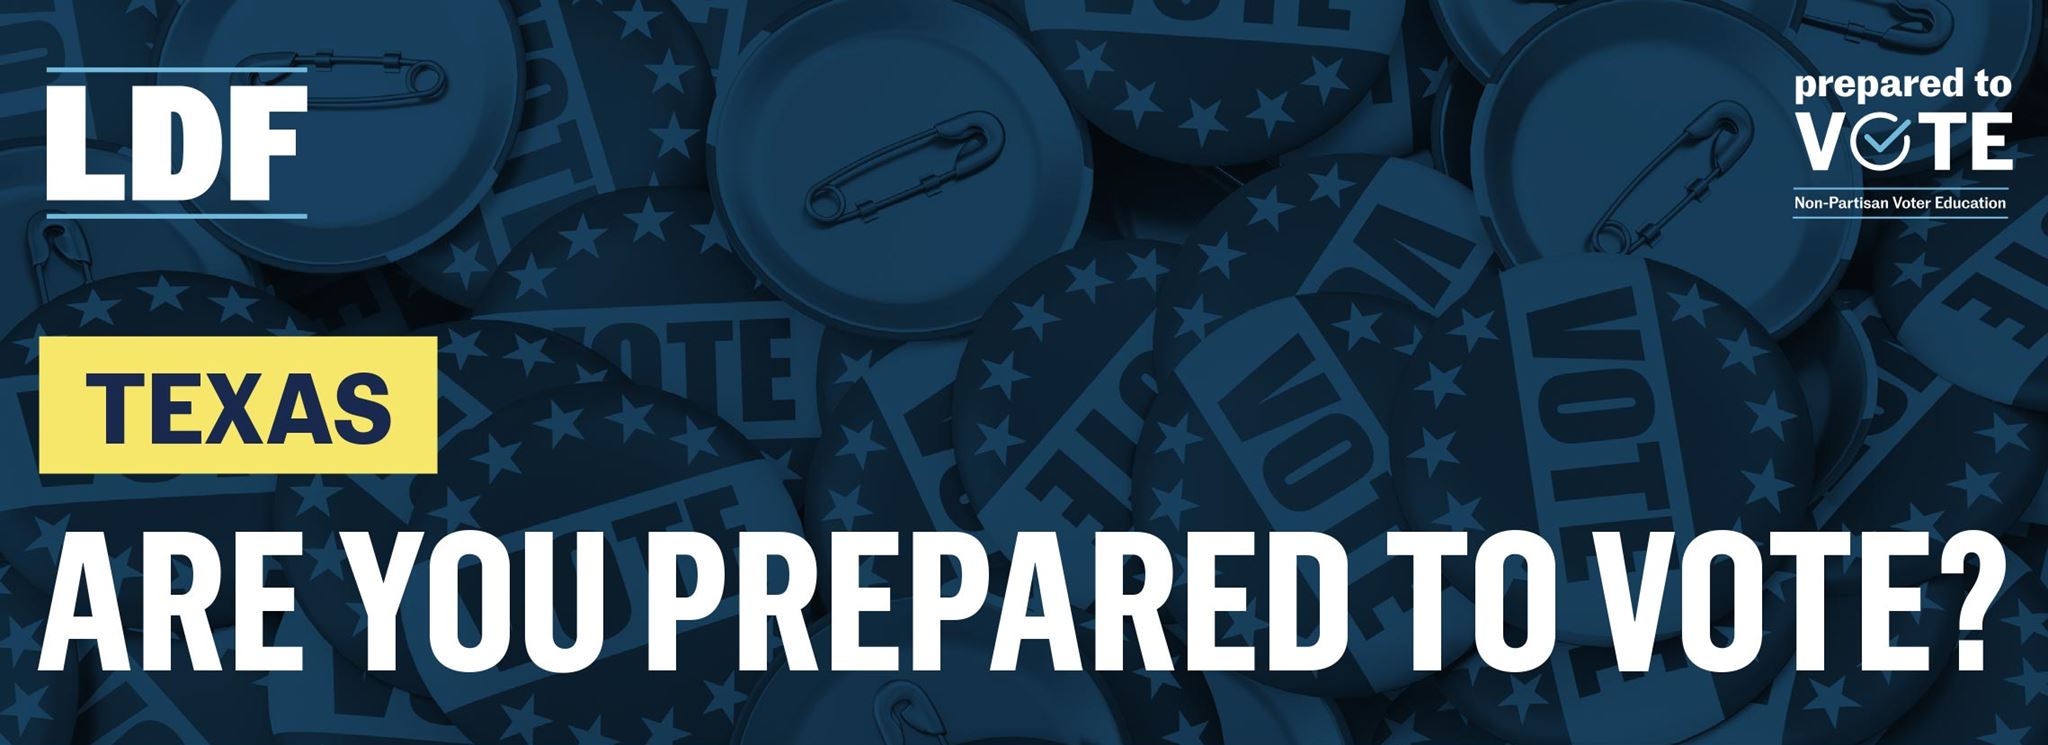 Texas: Are you prepared to vote?